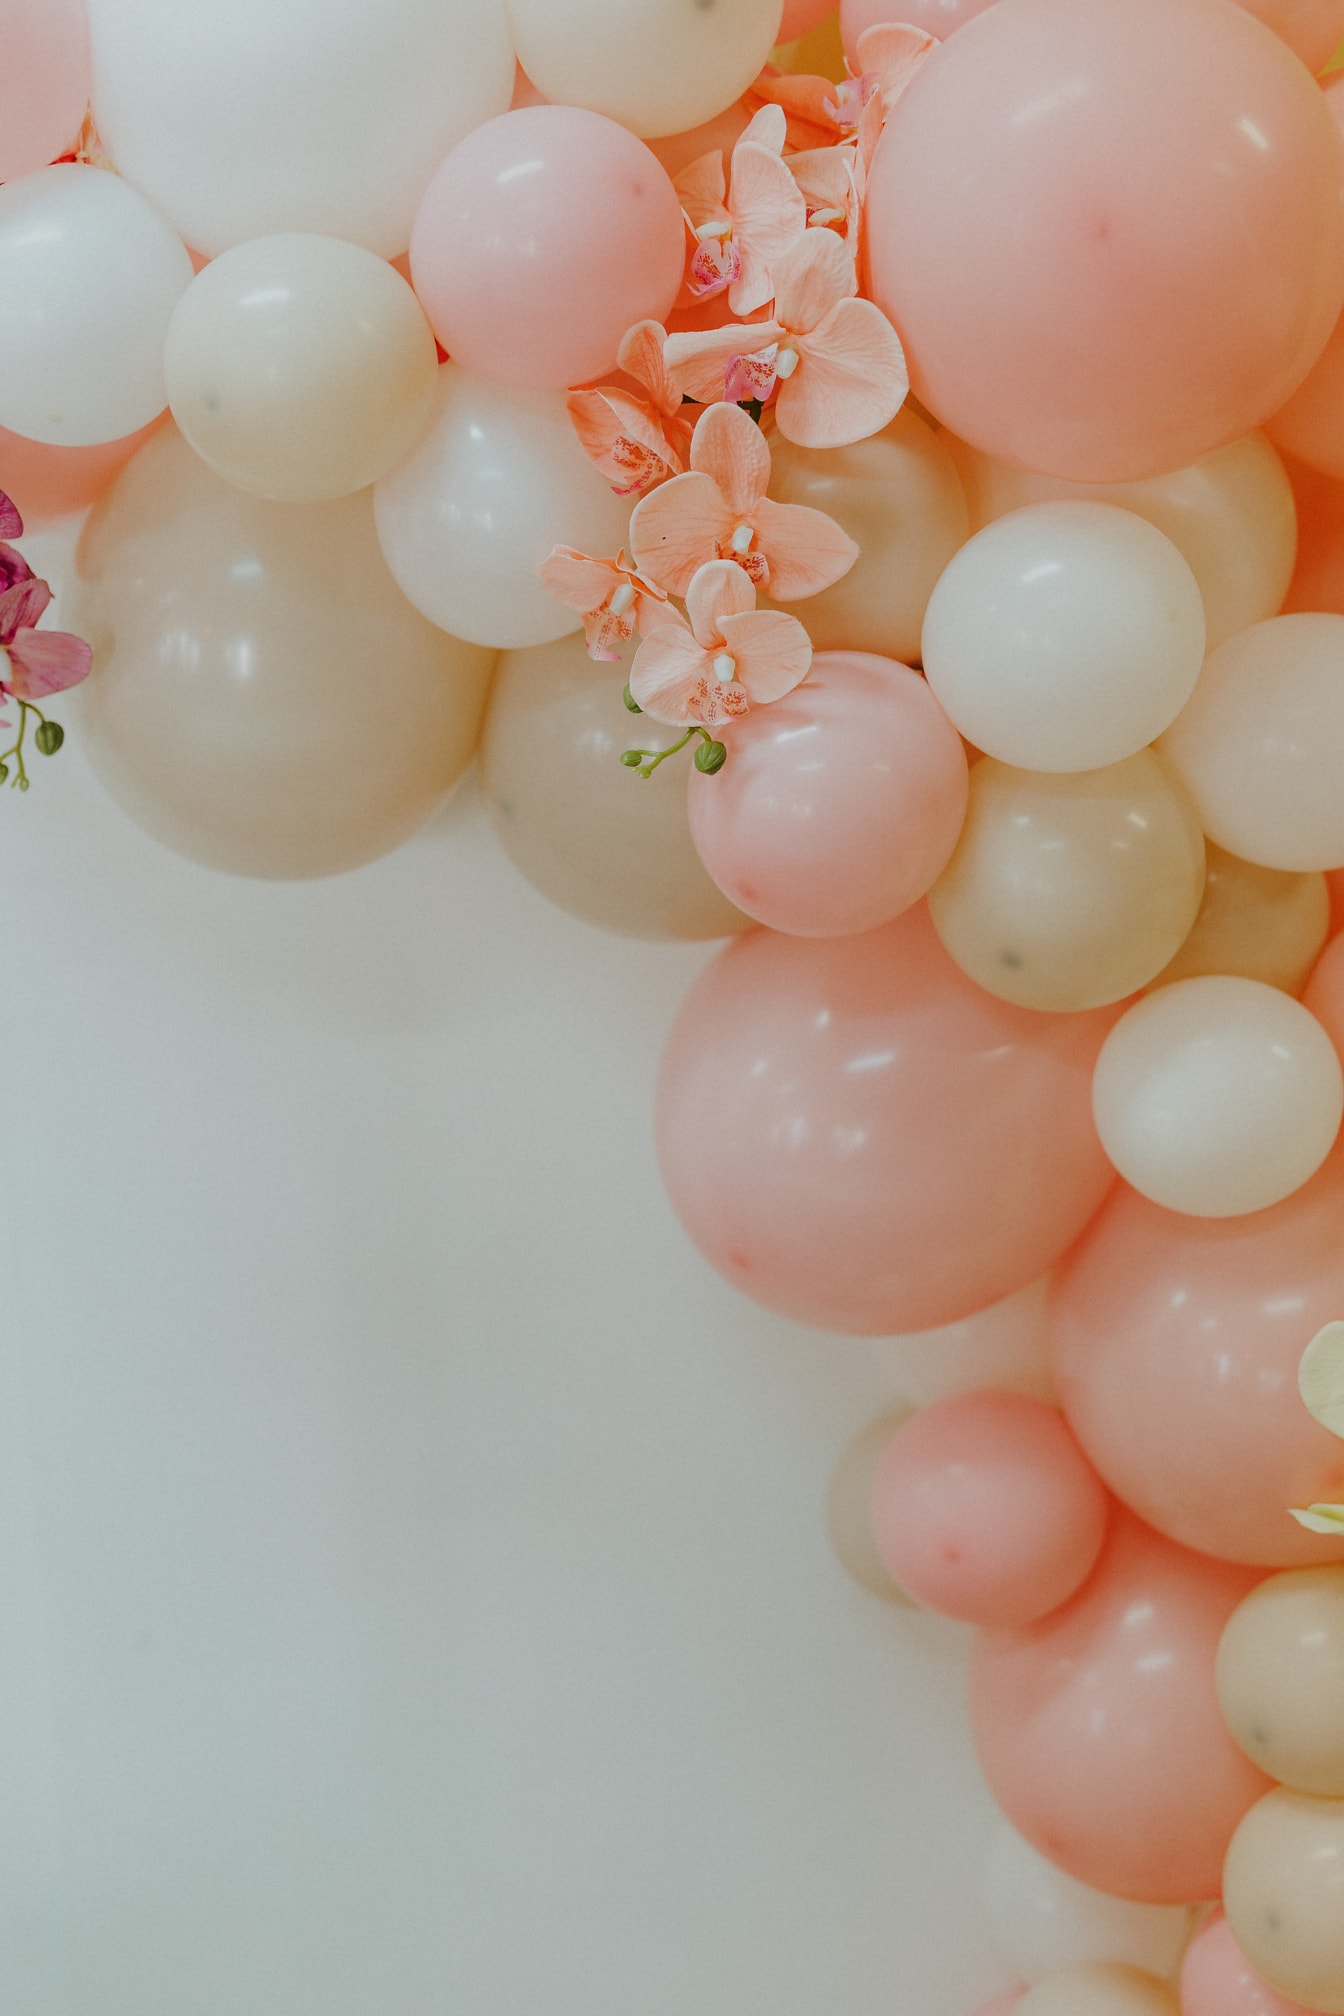 Nažloutlý a narůžovělý balónek elegantní dekorace s květy orchidejí